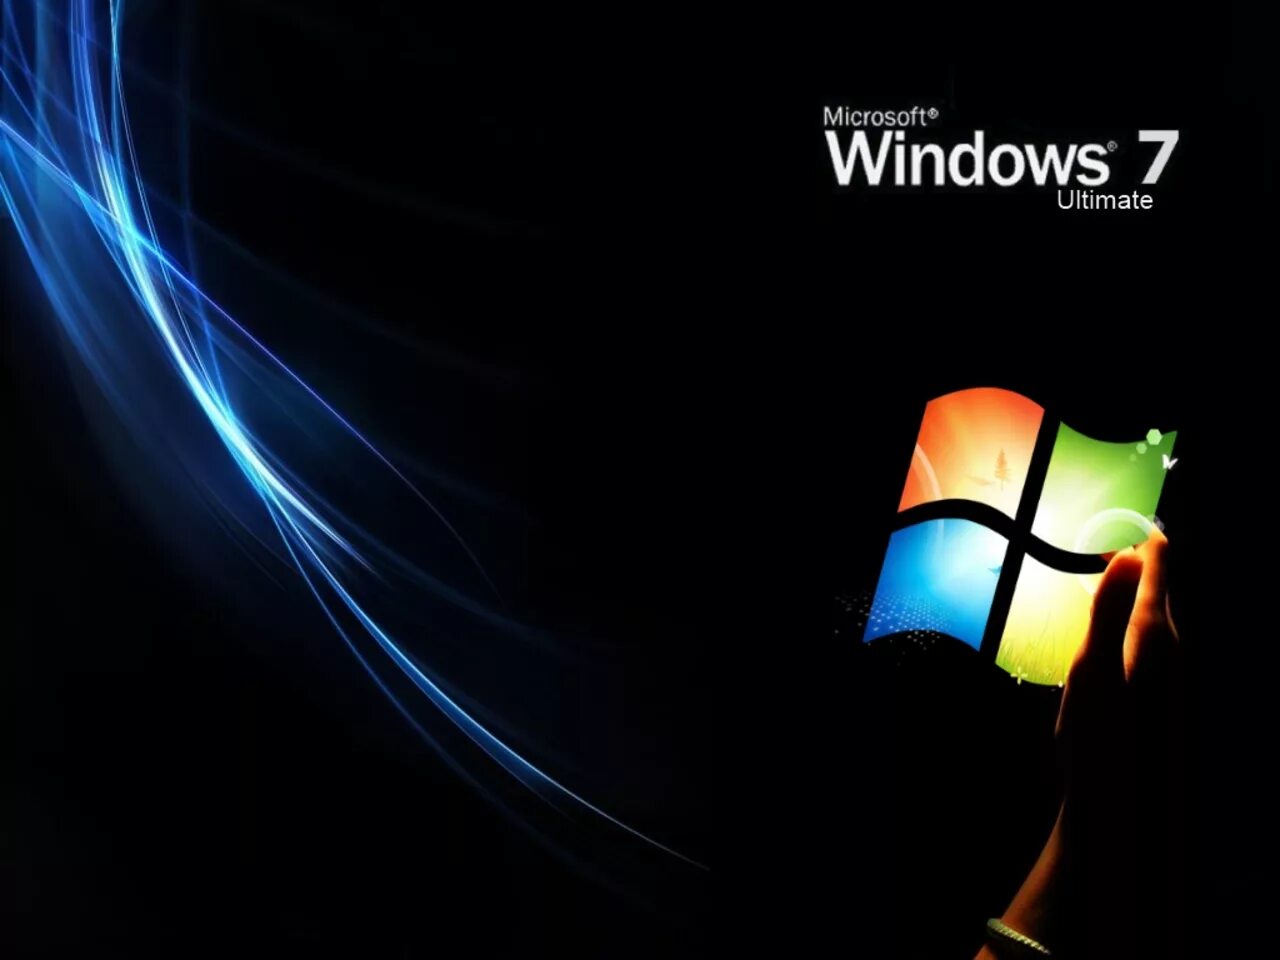 Виндовс 7. Обои Windows 7. Виндовс 7 ультиматум. Windows 7 максимальная Ultimate. Модель windows 7